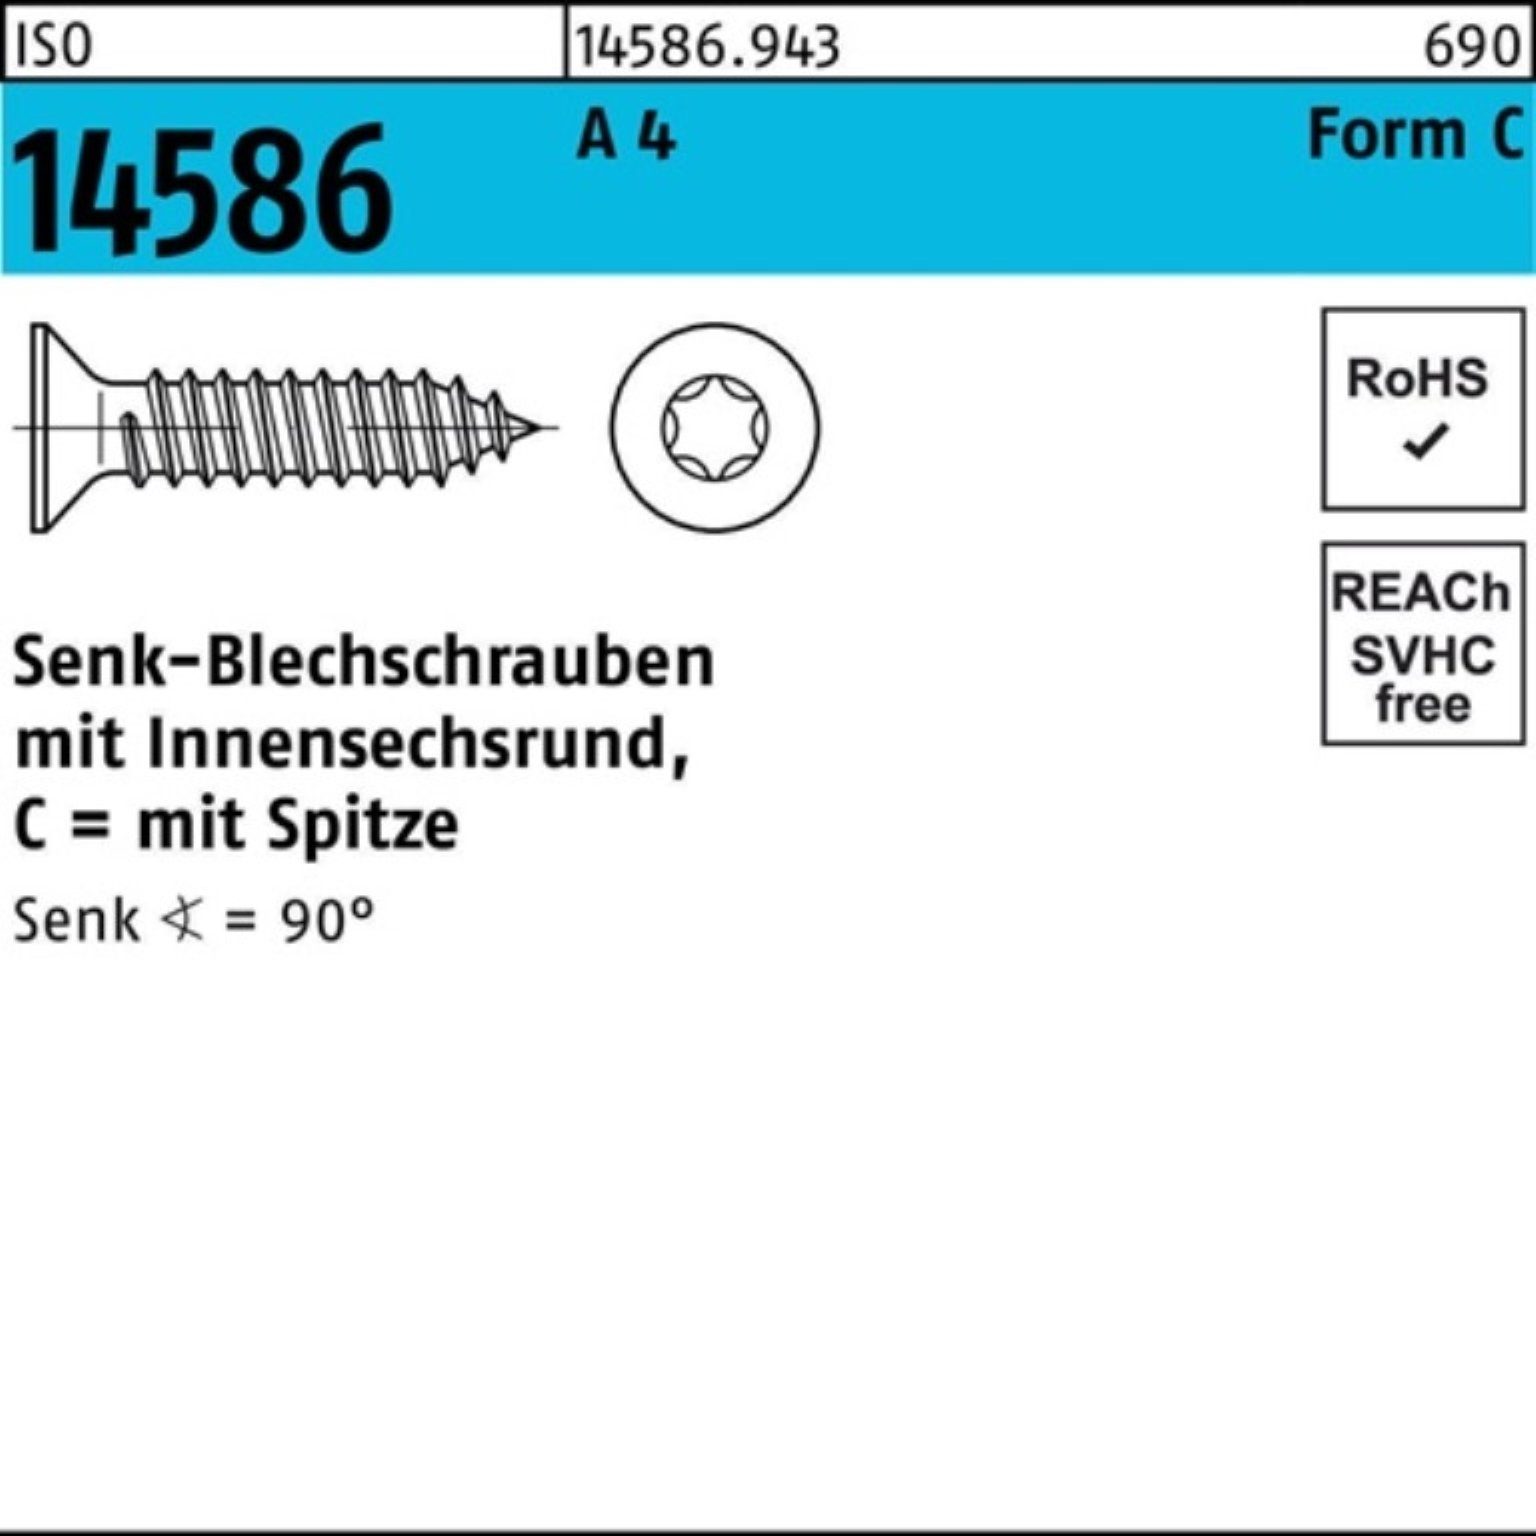 Pack 500er 500 Reyher A ISO 14586 Schraube 4 ISR/Spitze Senkblechschraube 4,2x 45-T20